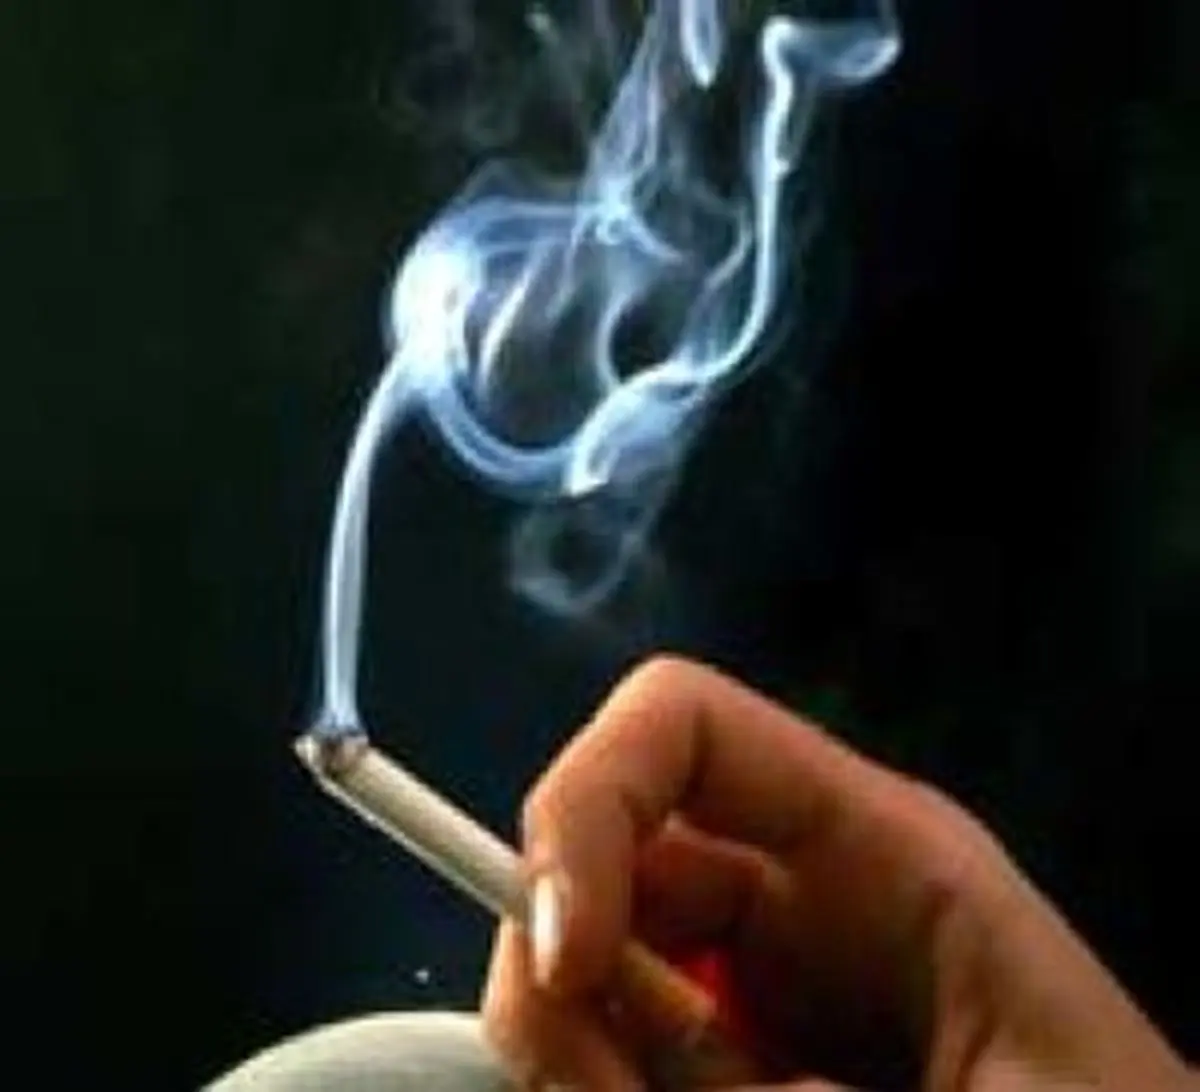 خبر تازه درباره ممنوعیت فروش دخانیات